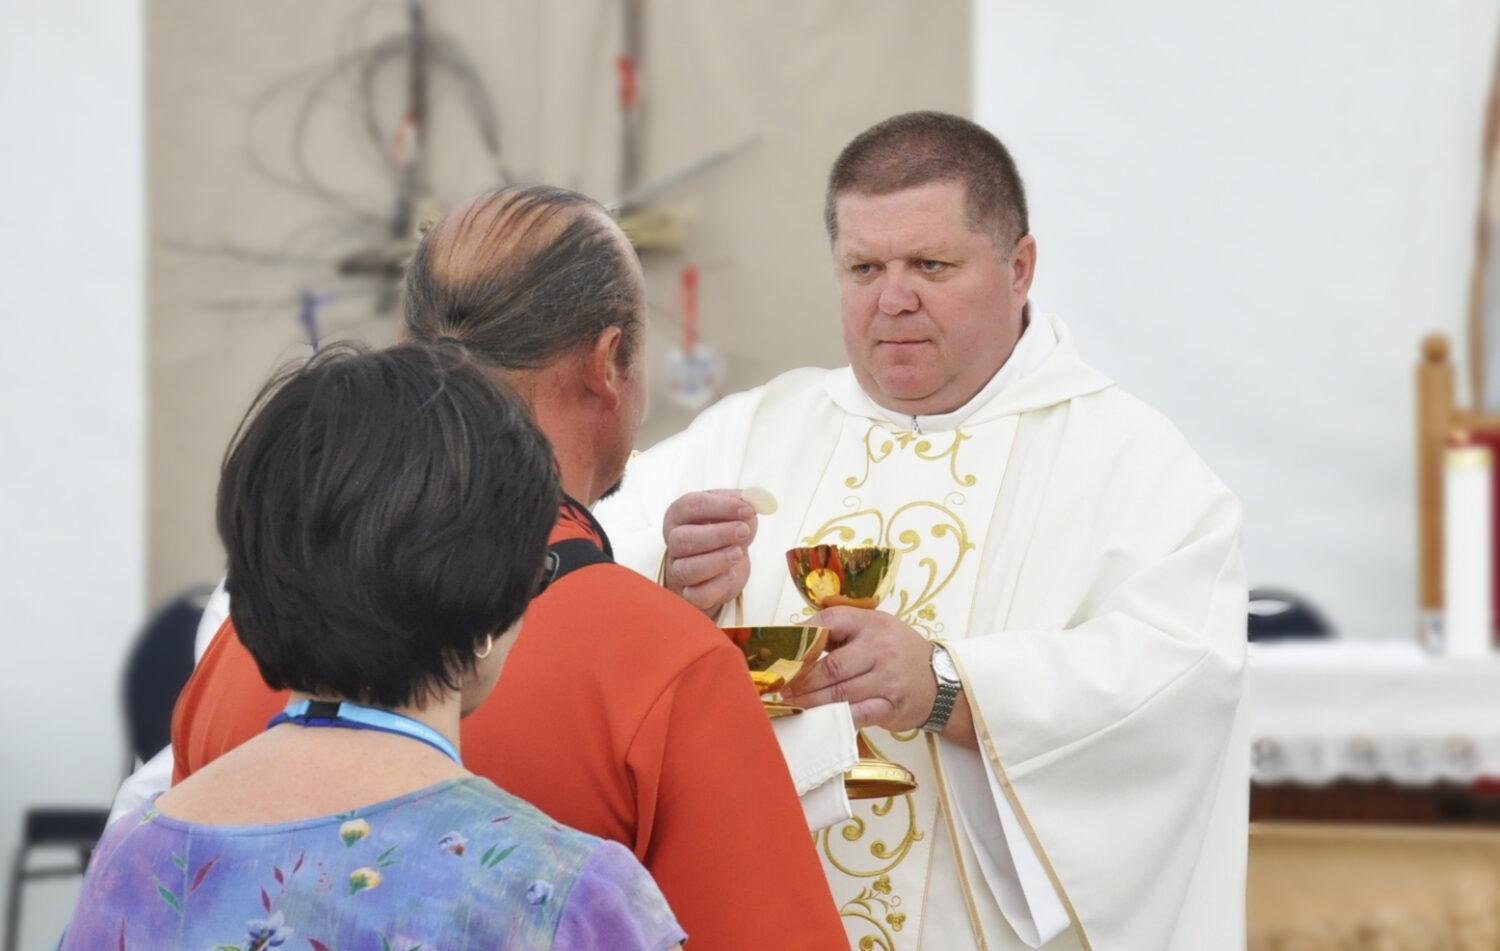 Biskup Peter Beňo: Evanjelium sa nedá šíriť so zachmúrenou tvárou